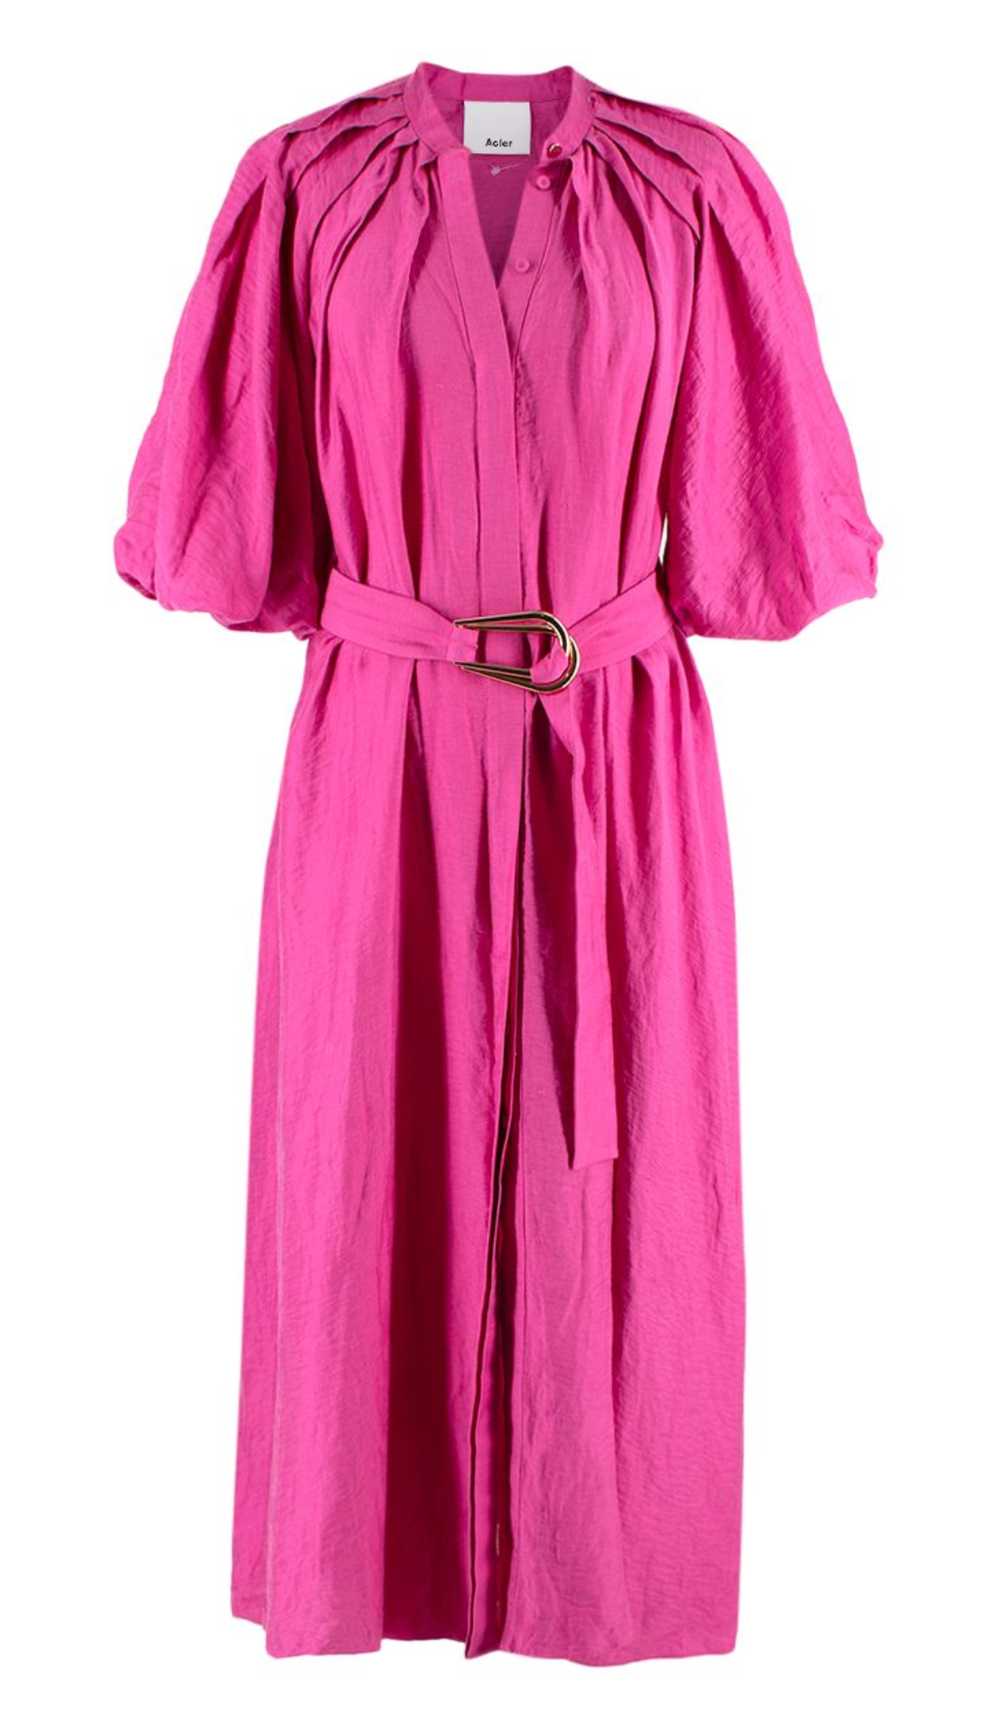 Acler Acler Linen-Blend Cranhurst Midi Dress - image 1